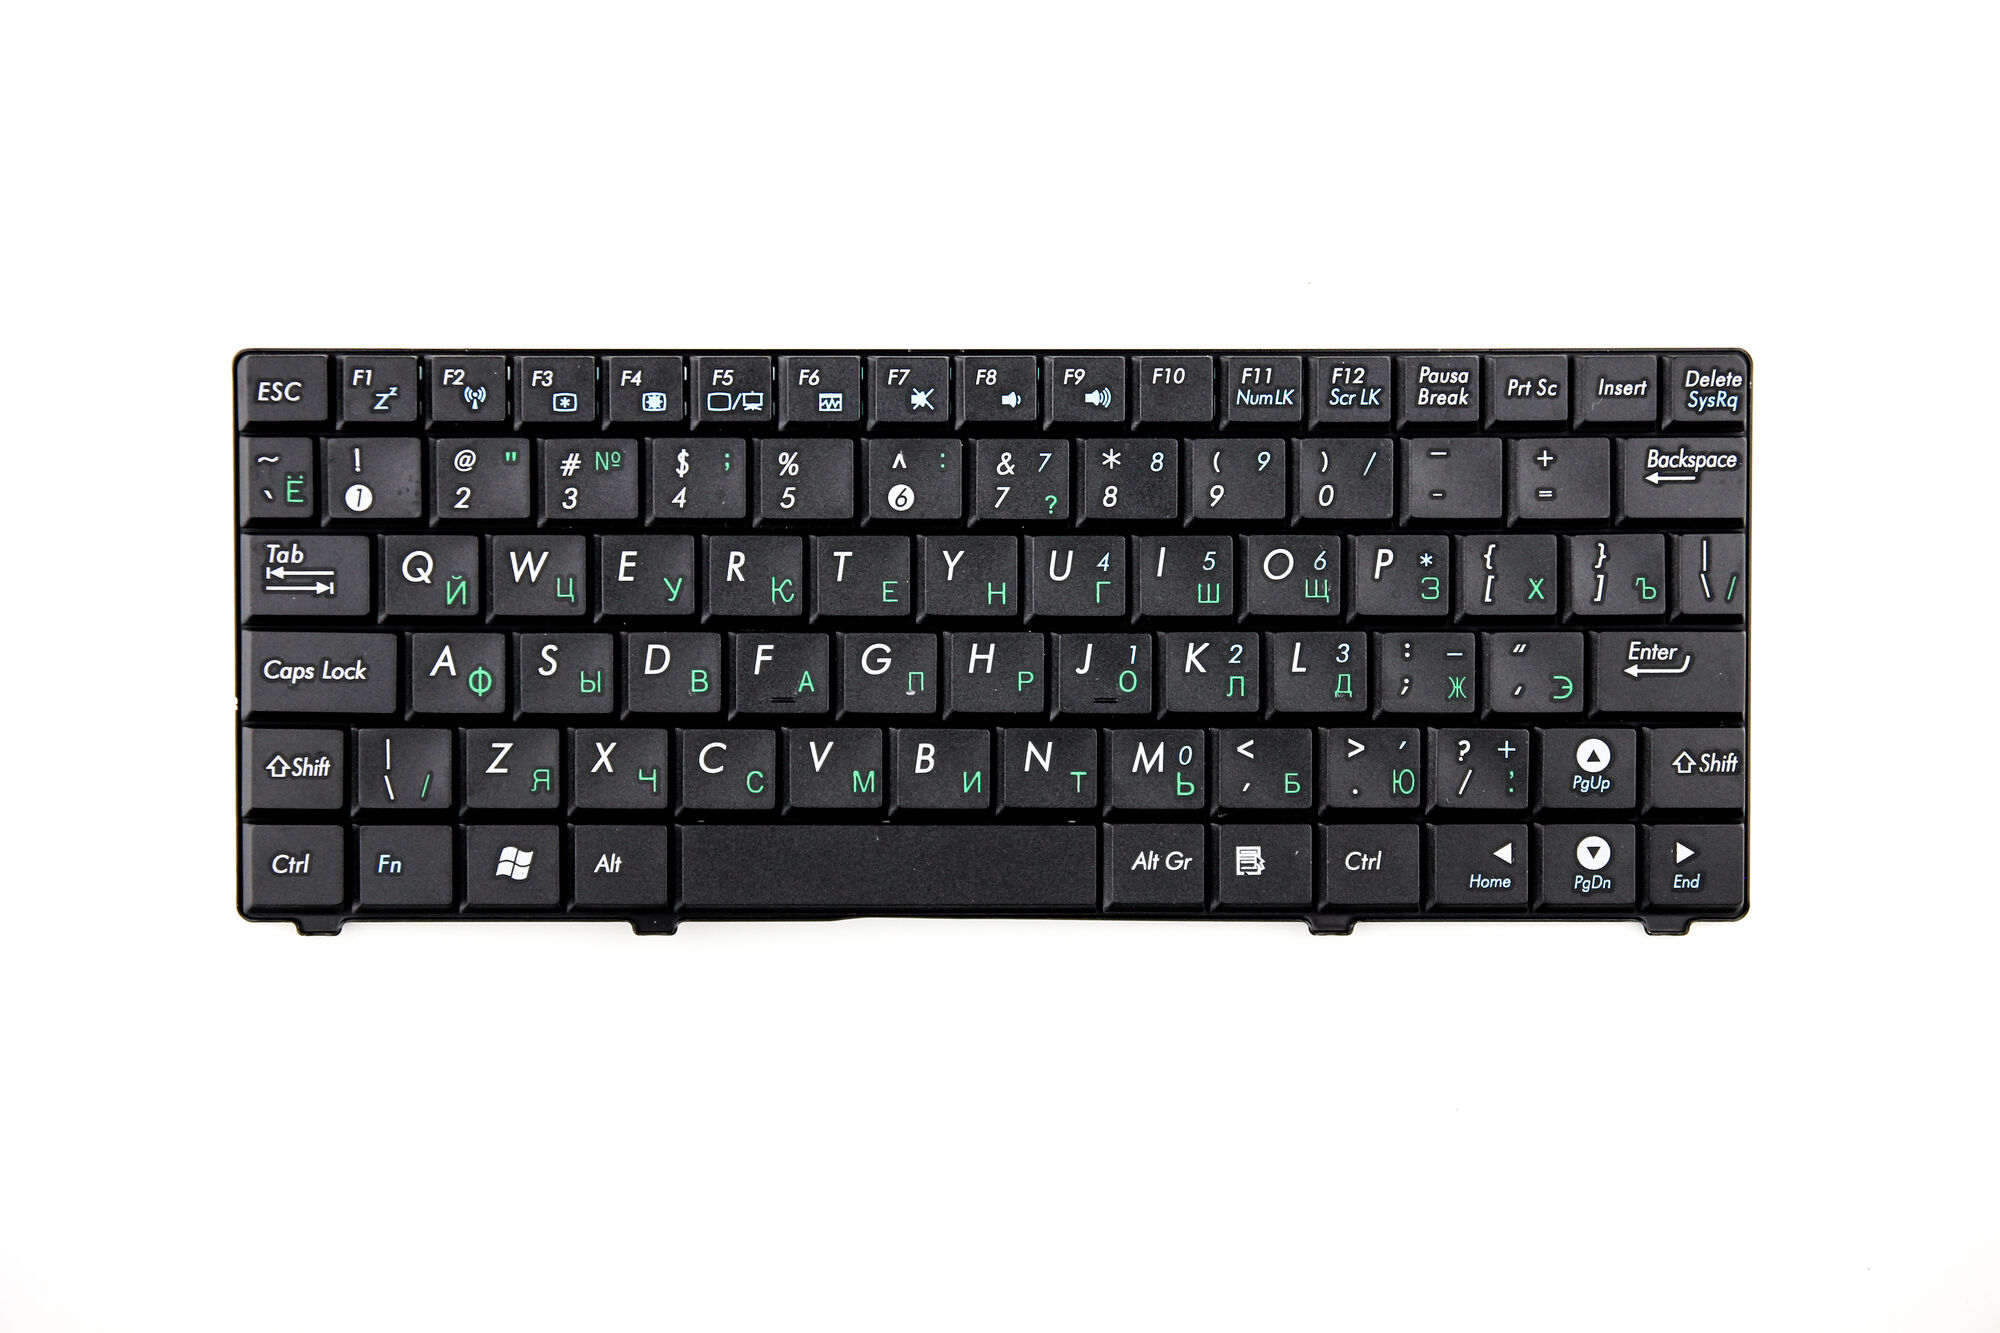 Клавиатура для Asus Eее PC 900HA S101 T91 Черная p/n: V100462BS1 RU, 0KNA-094RU01